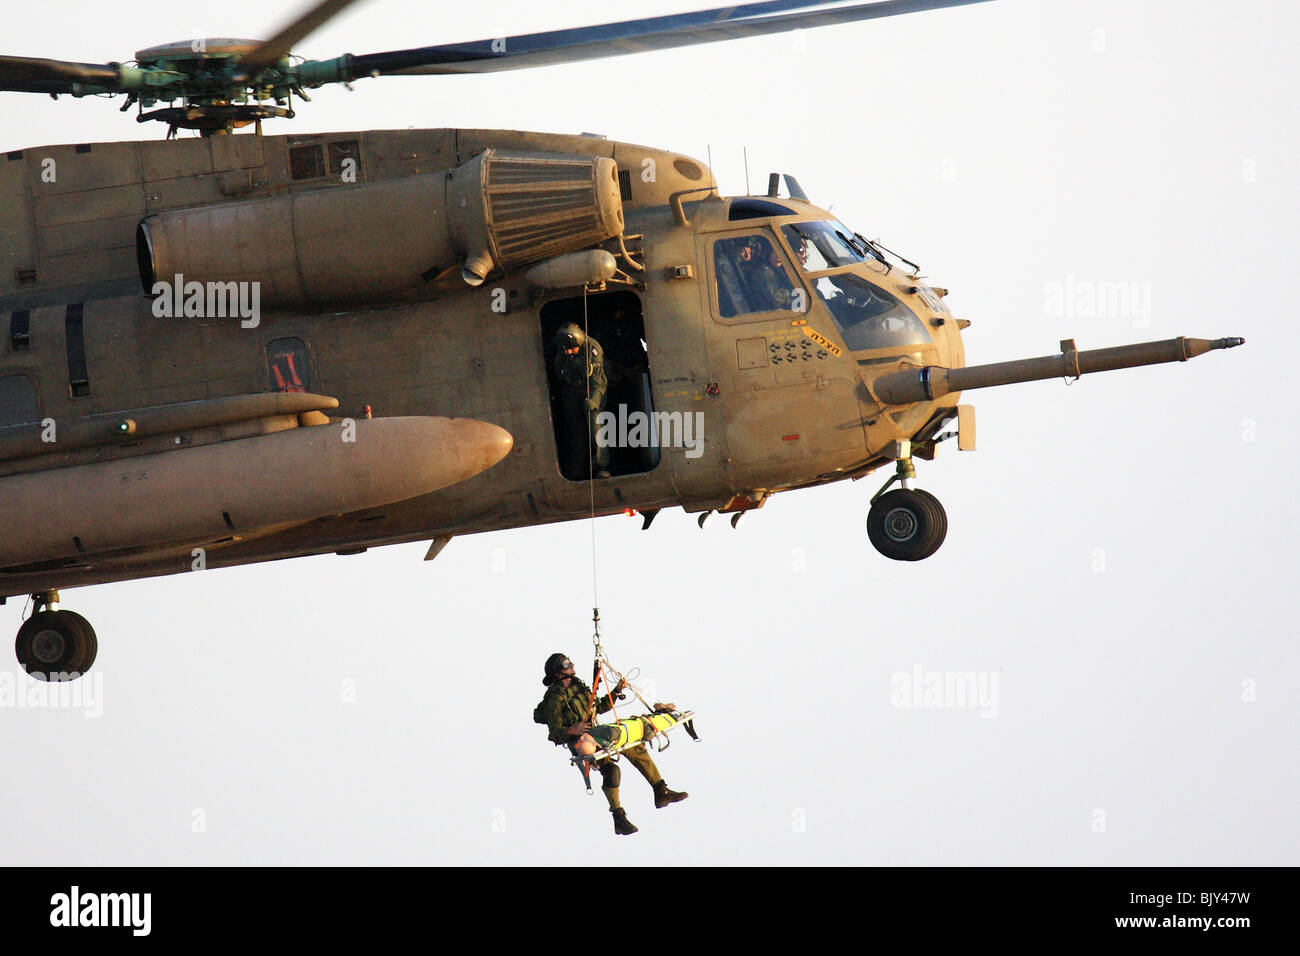 De l'air israélienne hélicoptère Sikorsky CH-53 pendant une opération de sauvetage Banque D'Images